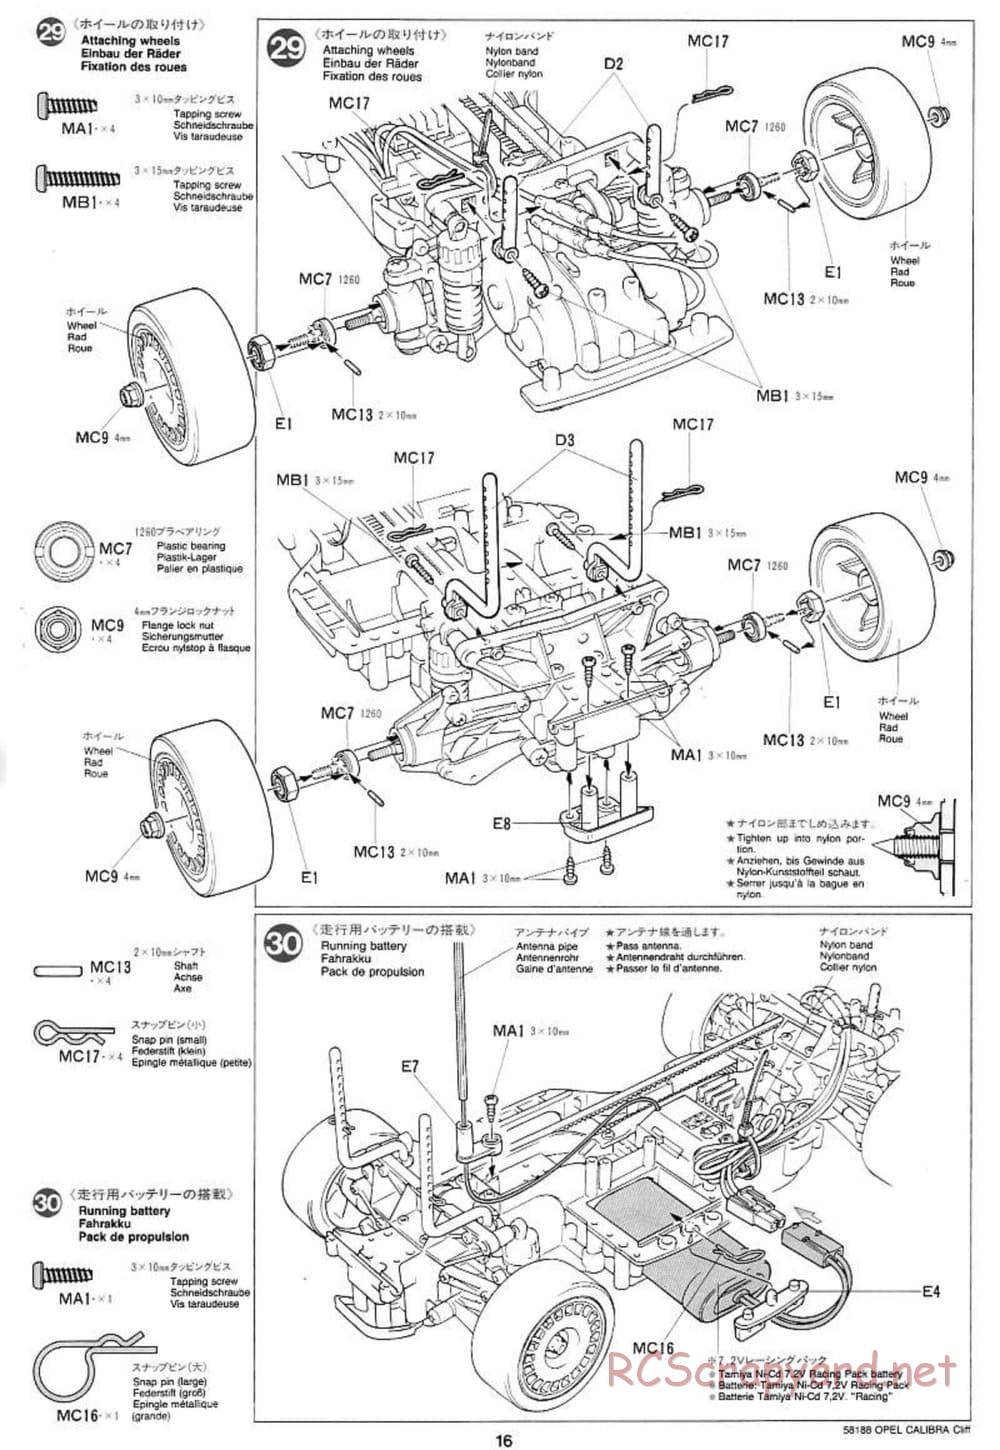 Tamiya - Opel Calibra Cliff - TA-03F Chassis - Manual - Page 16